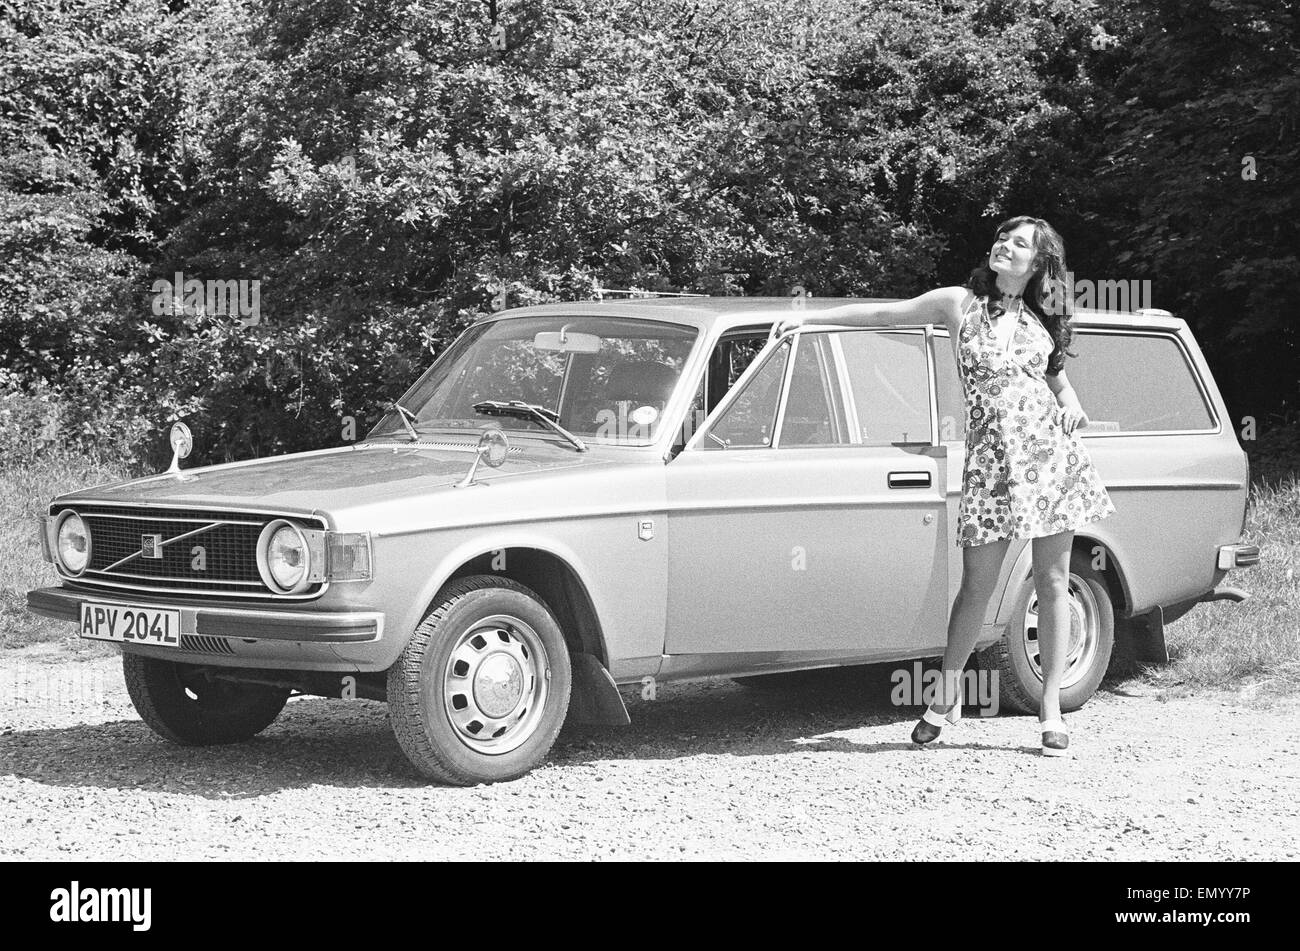 Sveglia modello visto qui in posa con una Volvo Station wagon il primo premio in una sveglia auto della concorrenza. Circa Gennaio 1971 Foto Stock